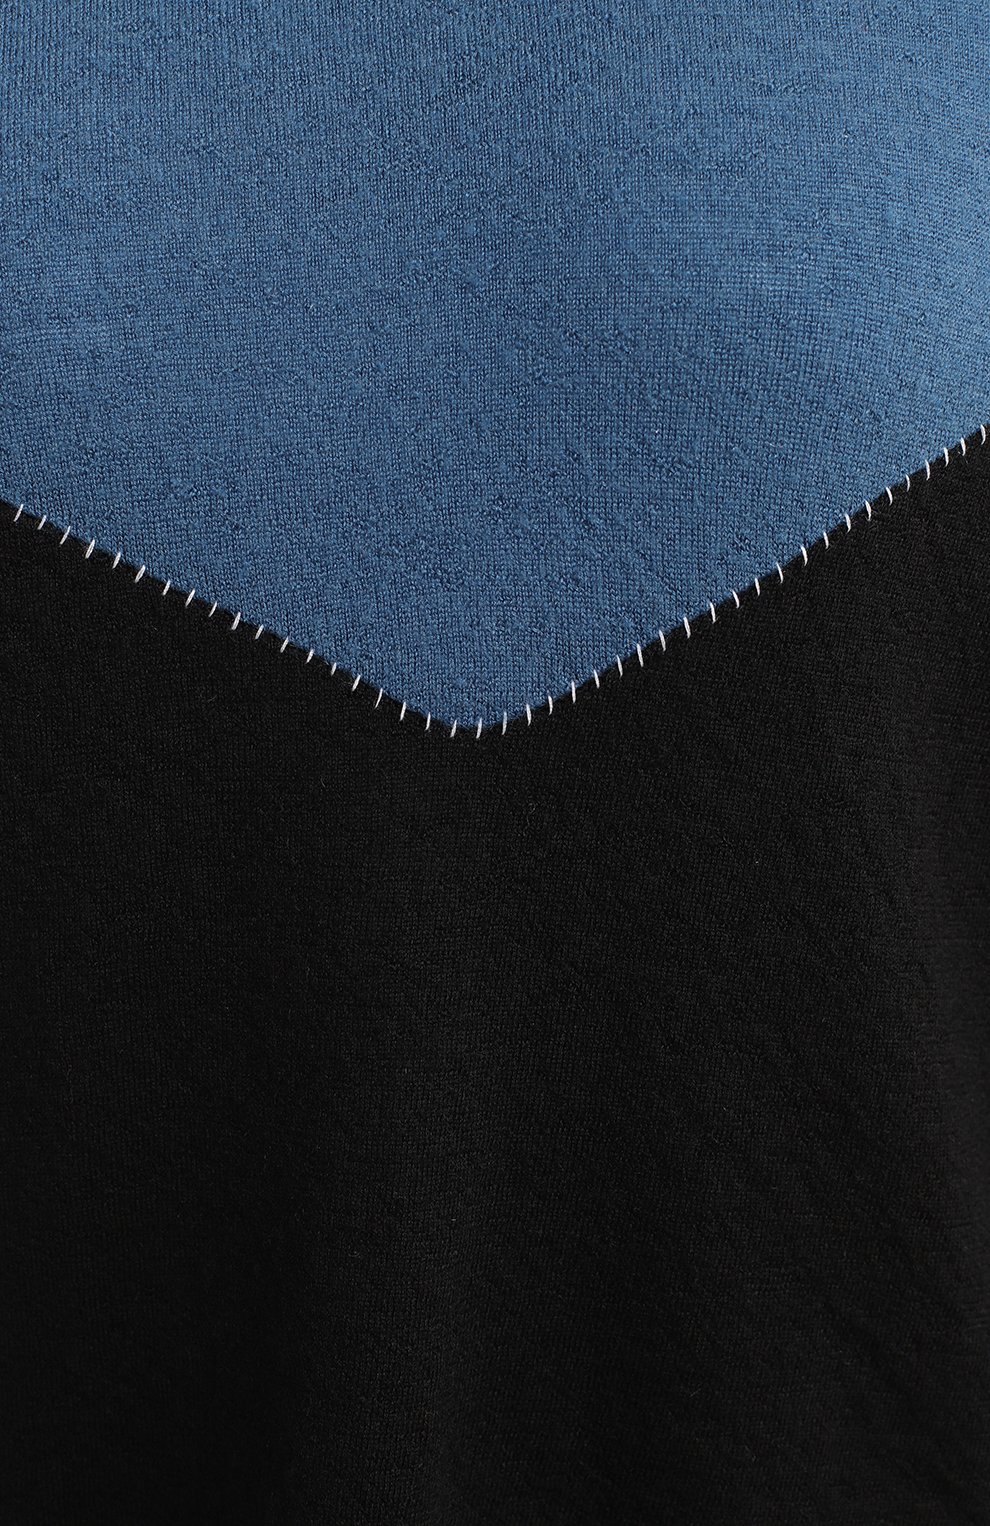 Кашемировый пуловер | Ben Tavernity Unravel Project | Синий - 3